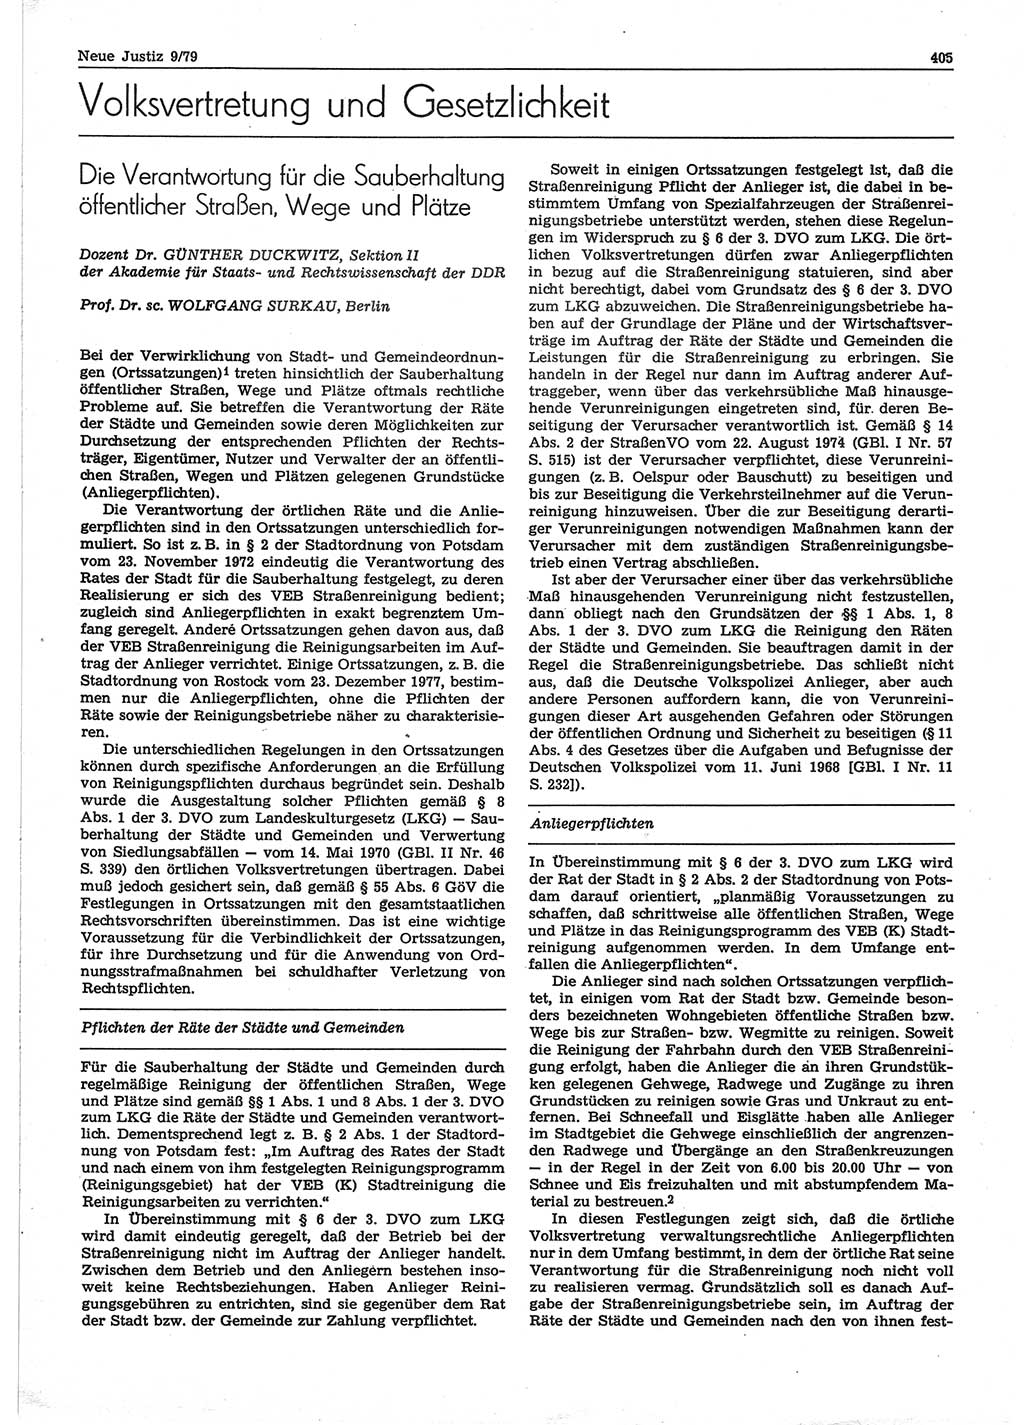 Neue Justiz (NJ), Zeitschrift für sozialistisches Recht und Gesetzlichkeit [Deutsche Demokratische Republik (DDR)], 33. Jahrgang 1979, Seite 405 (NJ DDR 1979, S. 405)